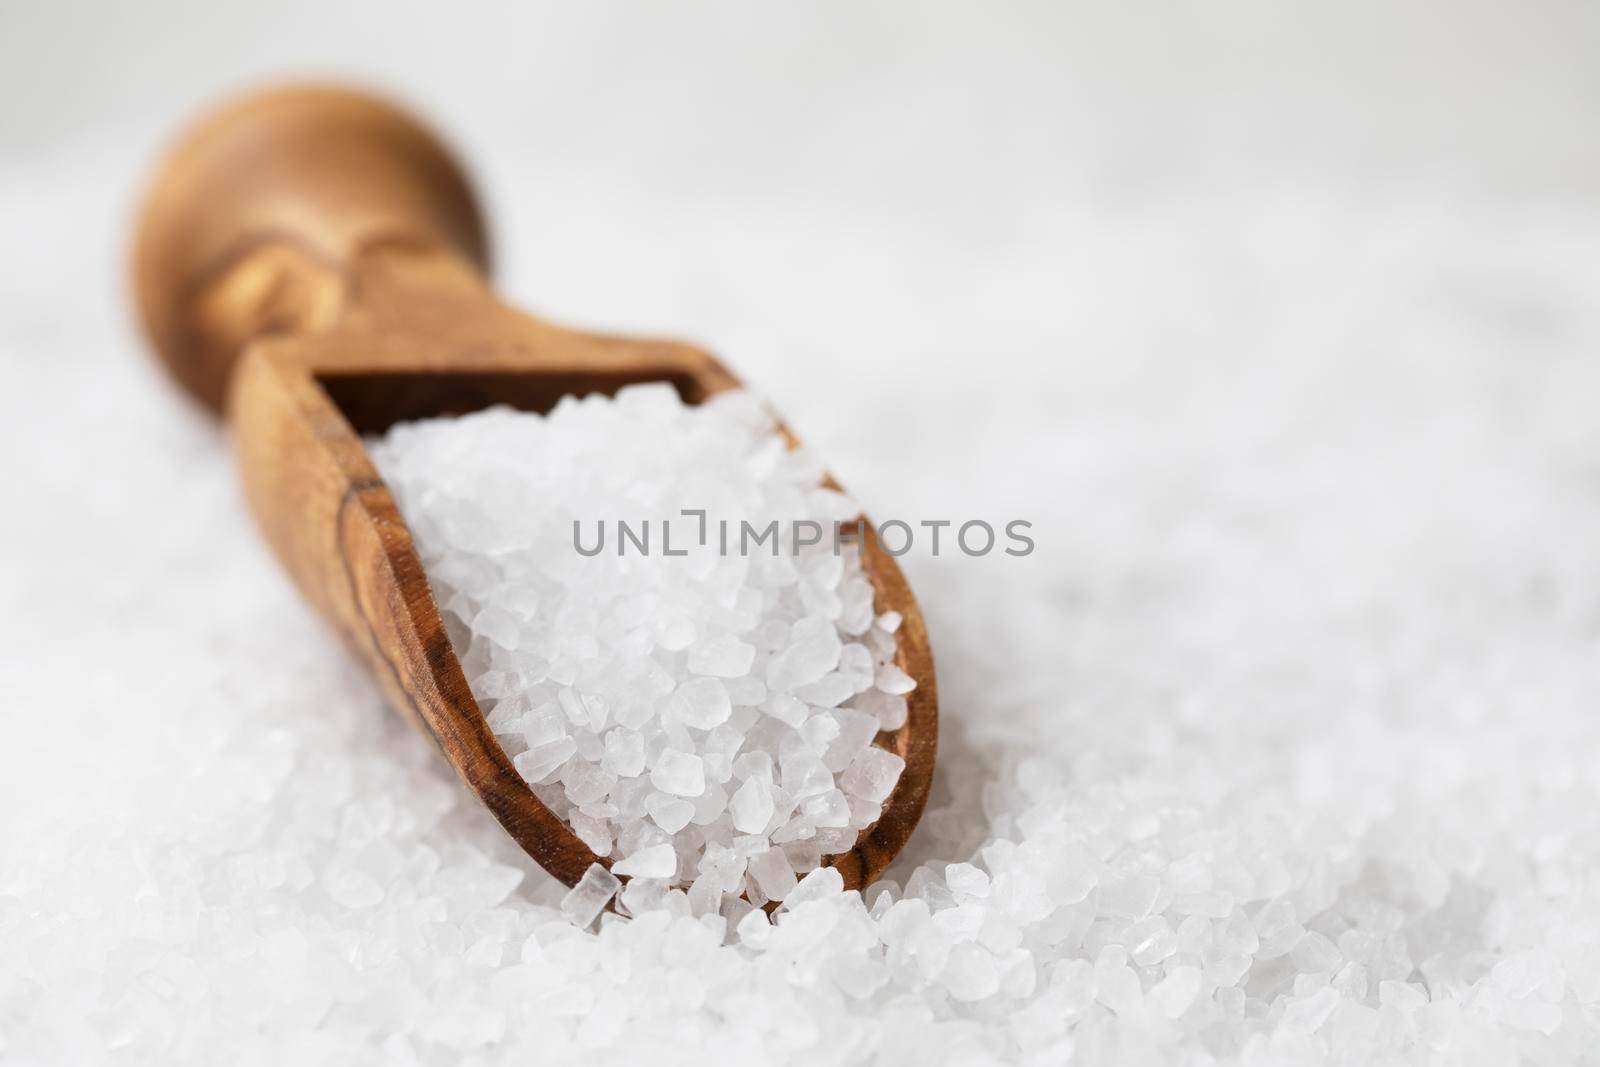 Salt crystals in wooden scoop on bed of salt.